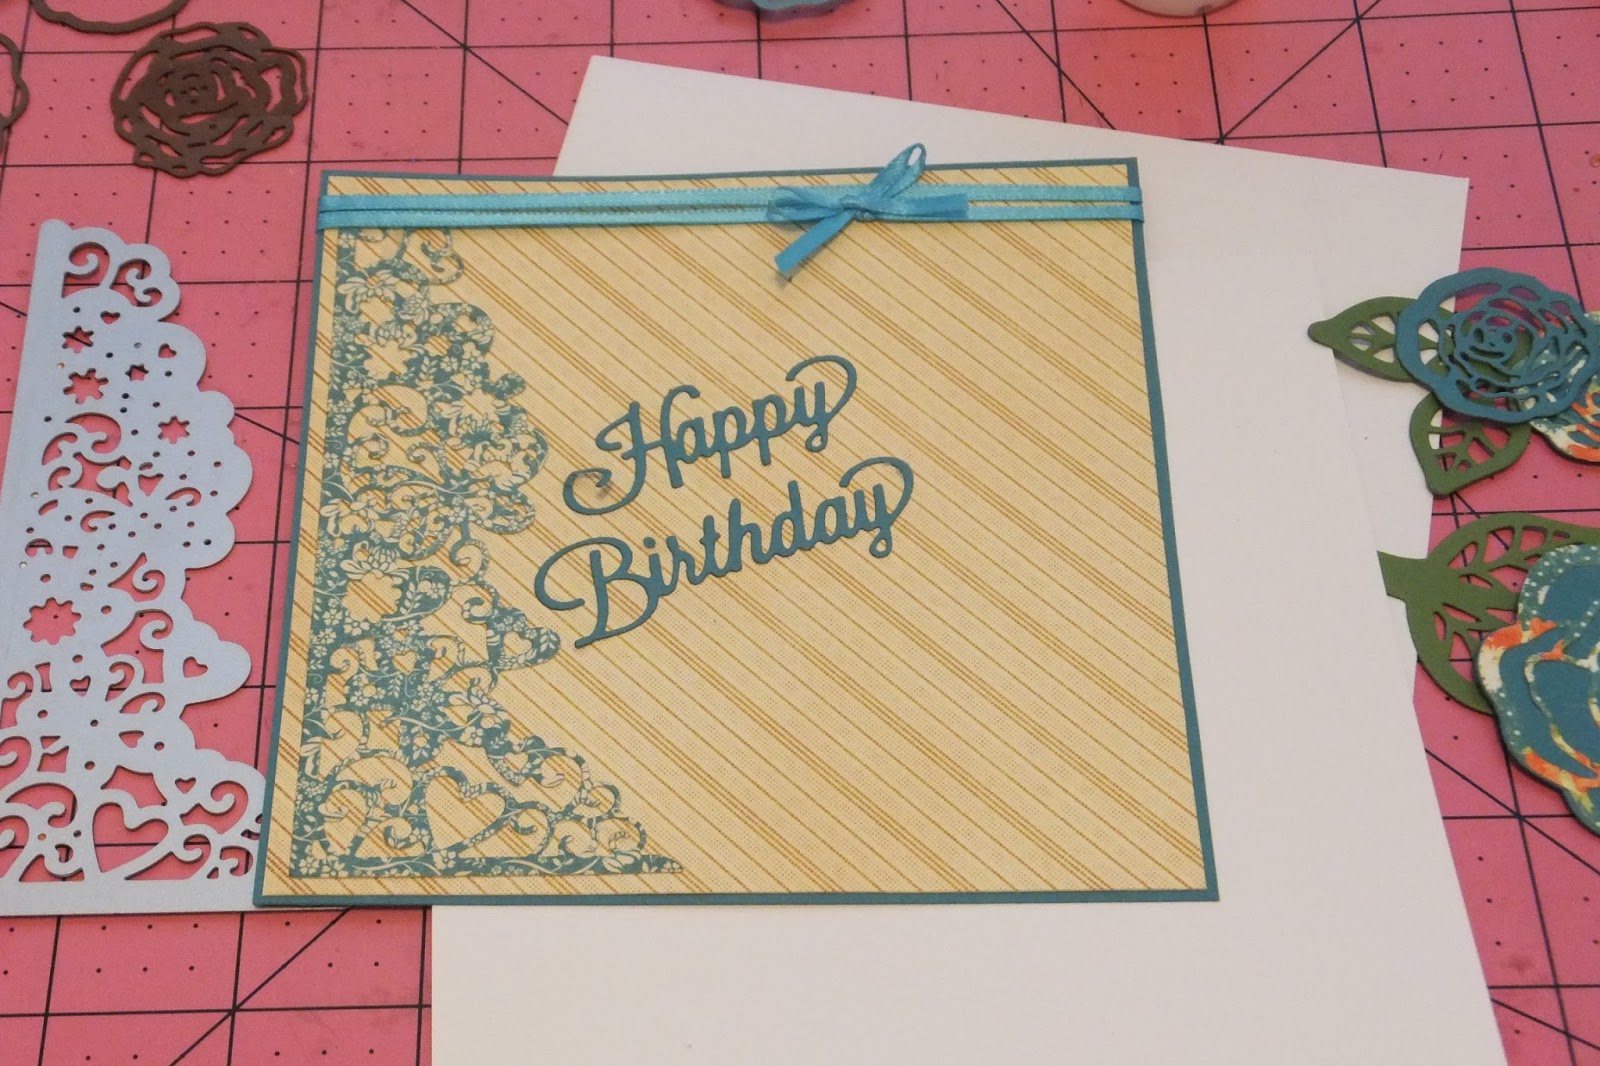 Dies R Us: Lots of dies used to create this fun Happy Birthday Card